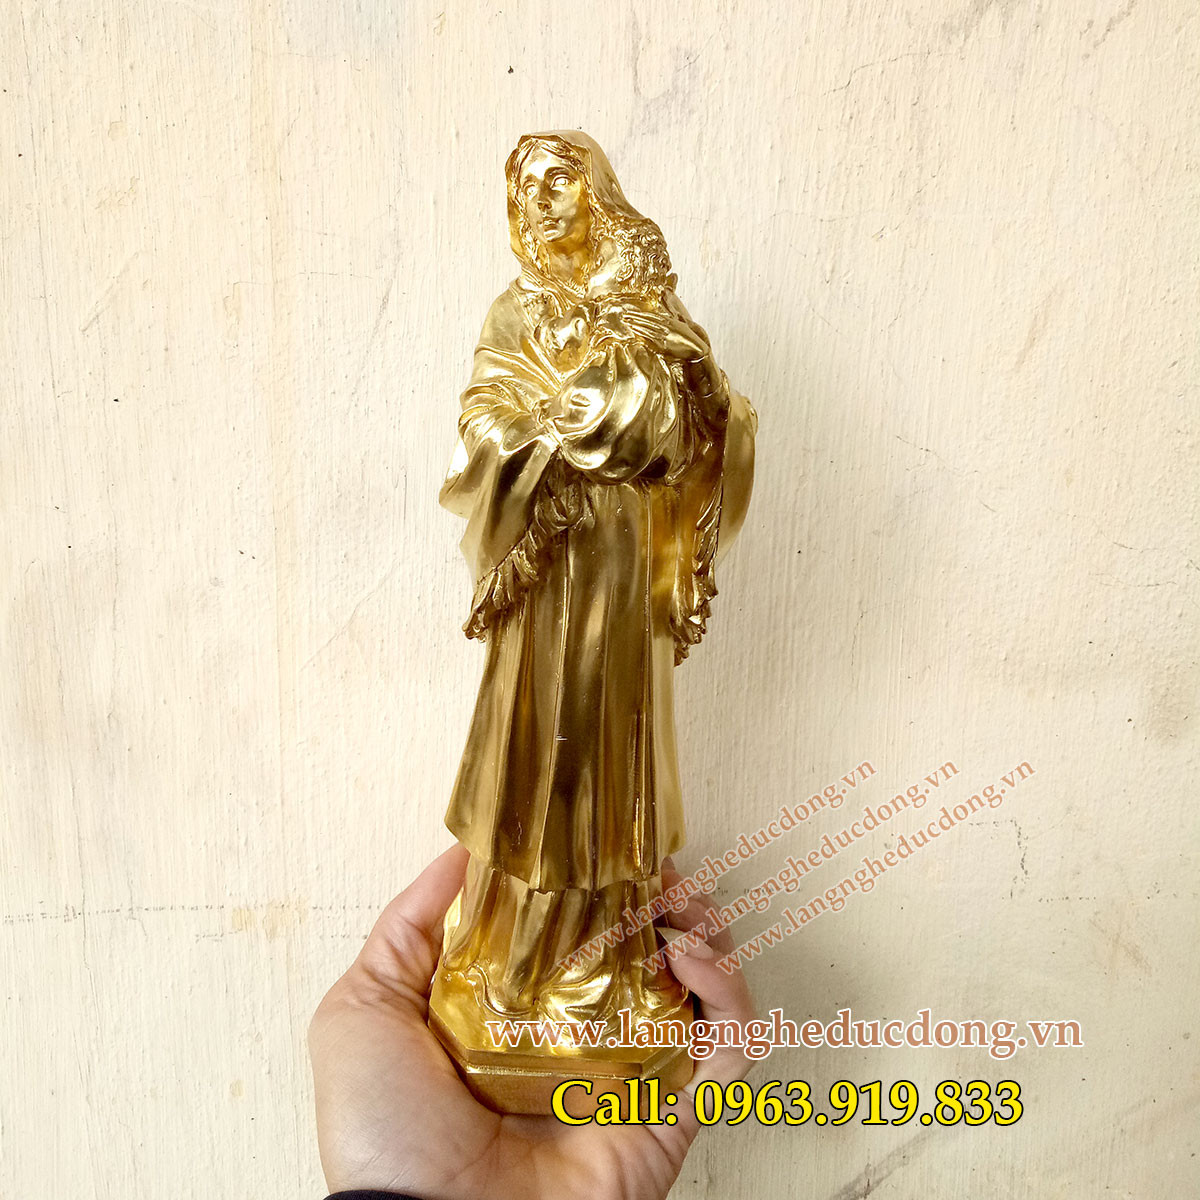 langngheducdong.vn - tượng đức mẹ maria, tượng đức mẹ bồng con, tượng thiên chúa, tượng trang trí bằng đồng